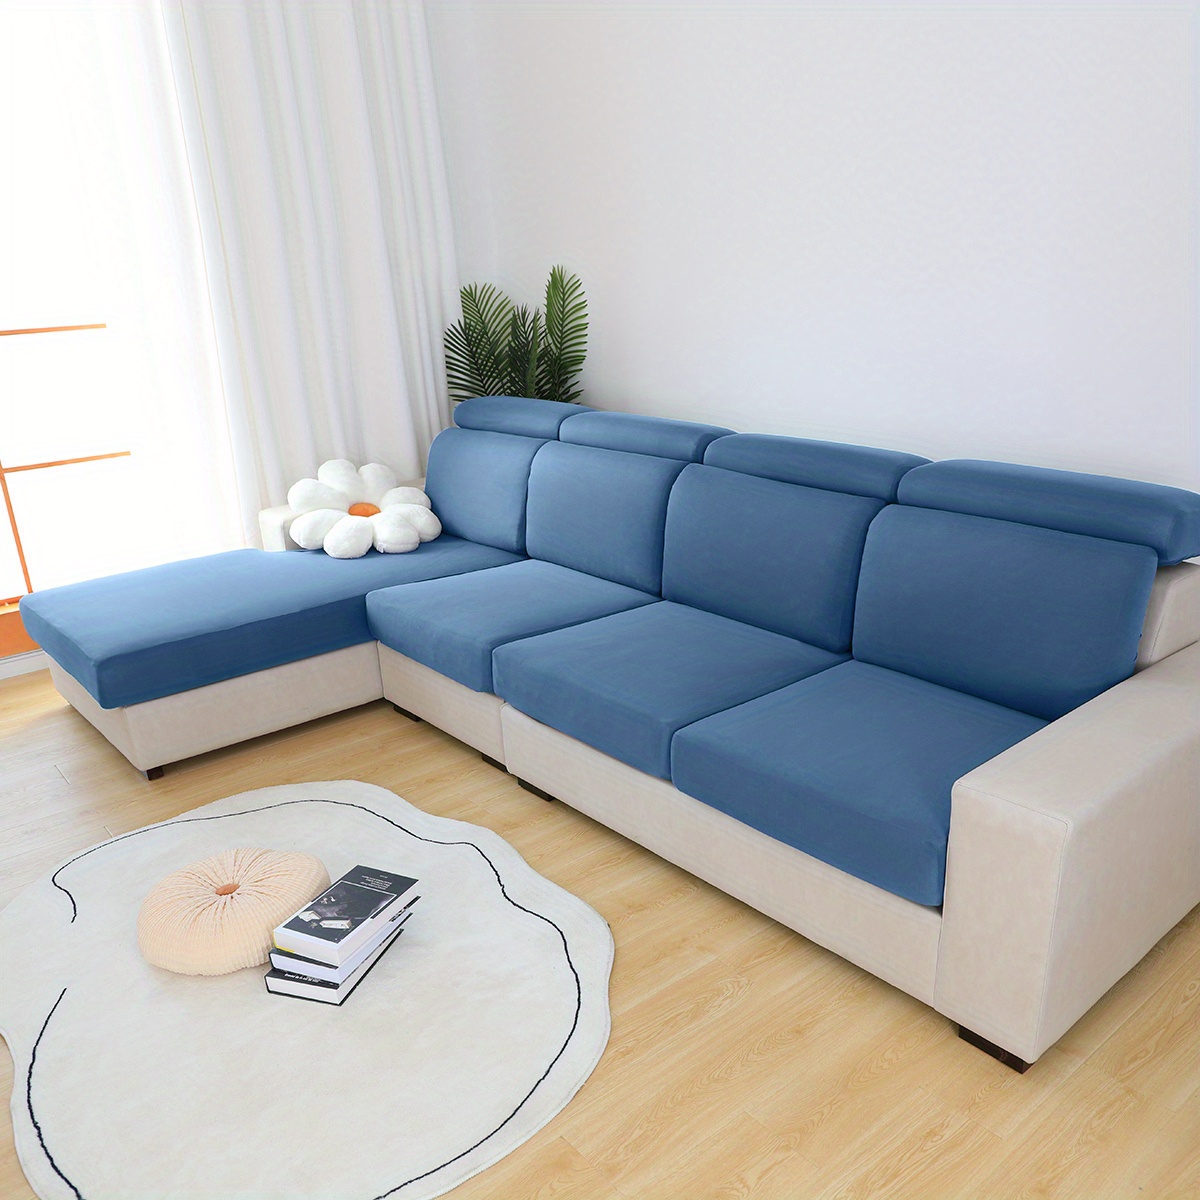  Alta Funda de sofá elástica silod color funda elástico funda  sofá muebles Protector Cotton para todas las estaciones – 1, 2, 3, 4 plazas,  H : Hogar y Cocina